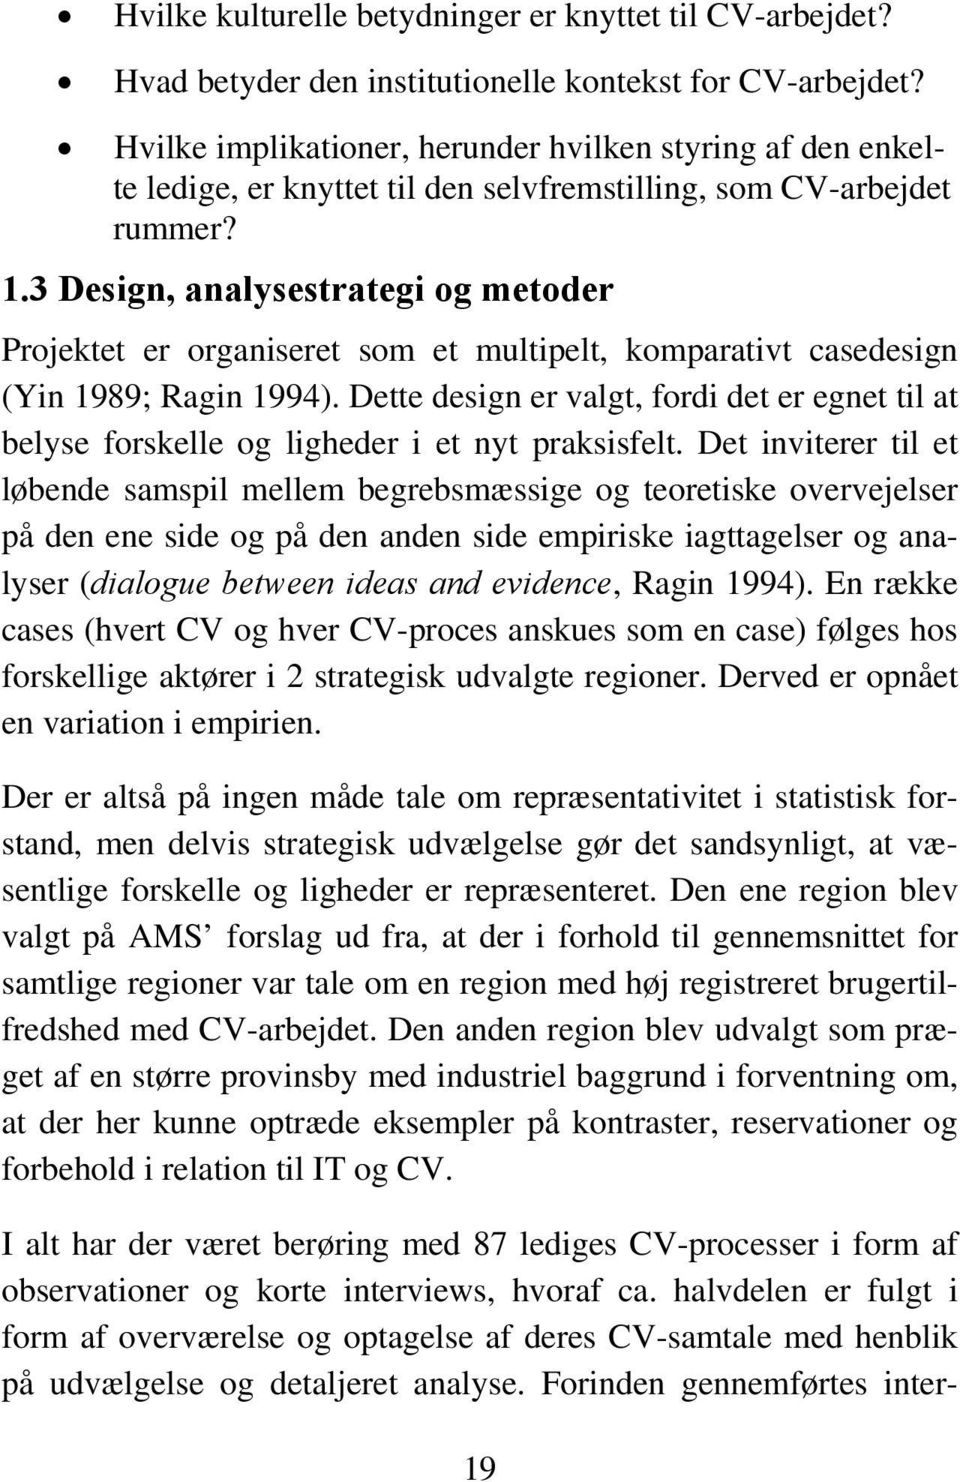 3 Design, analysestrategi og metoder Projektet er organiseret som et multipelt, komparativt casedesign (Yin 1989; Ragin 1994).